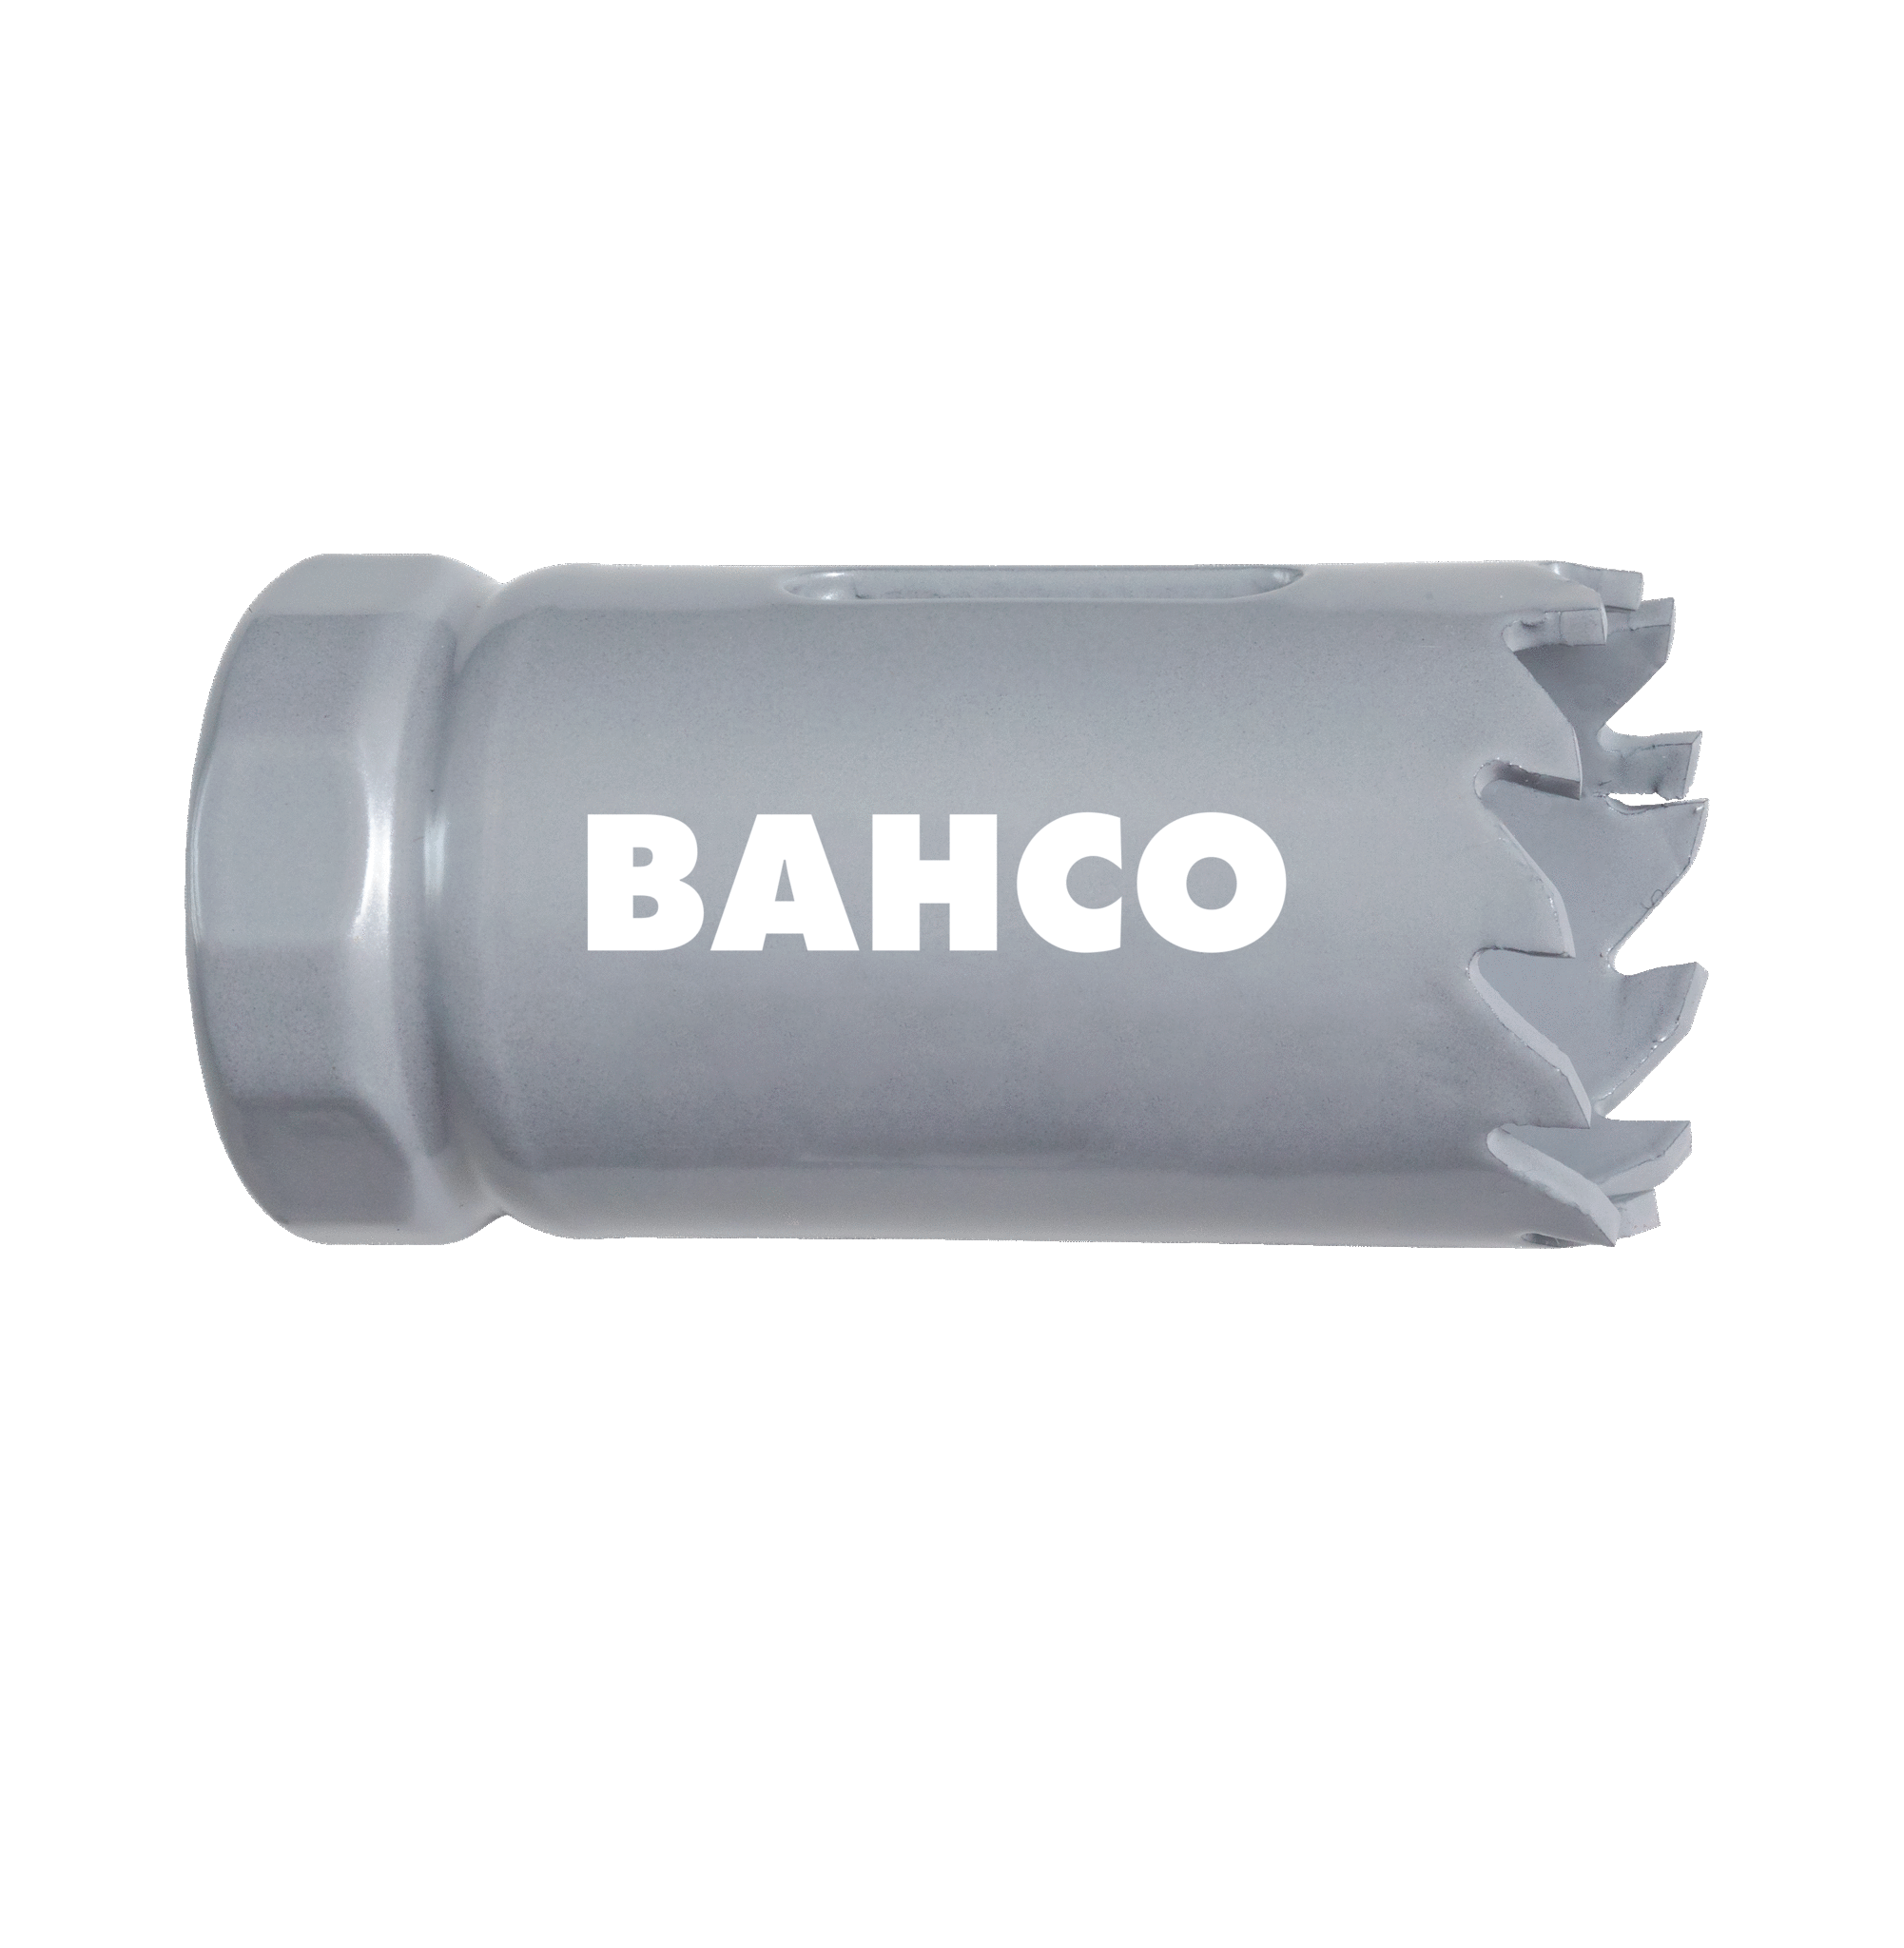 Кольцевые пилы с твердосплавными напайками BAHCO 3832-140